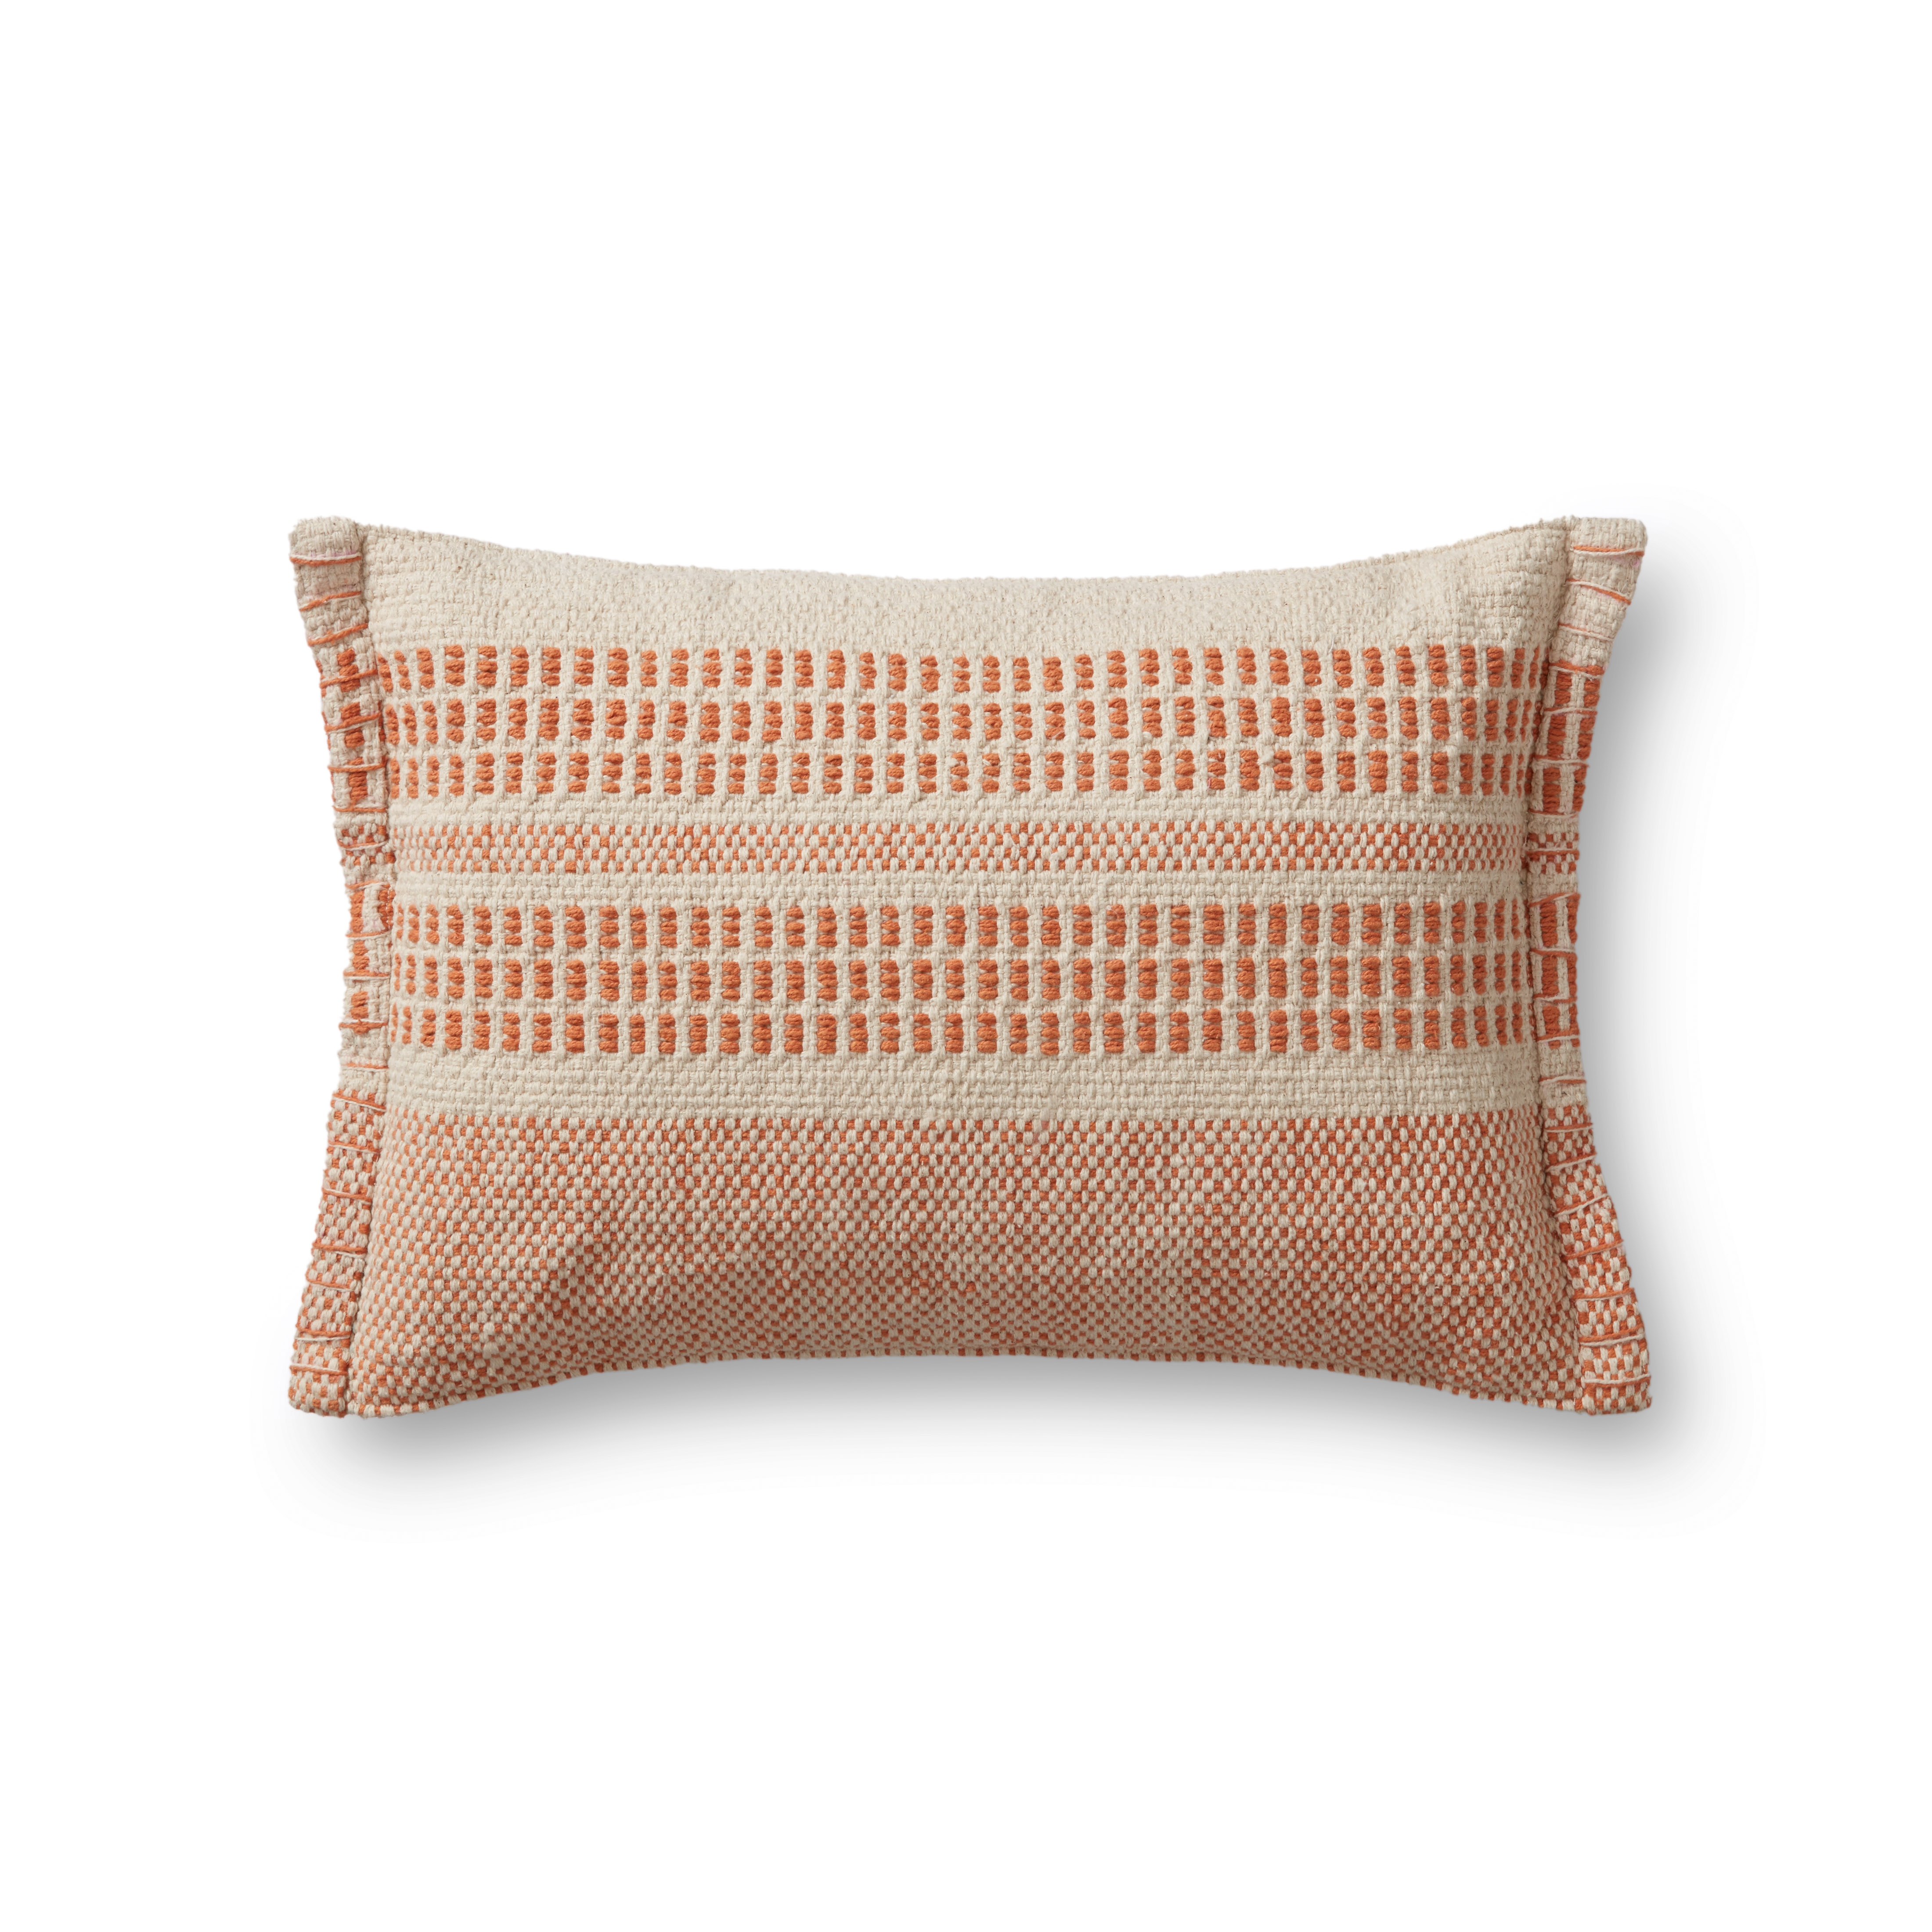 Woven Striped Lumbar Throw Pillow, Rust, 21" x 13" - Image 0